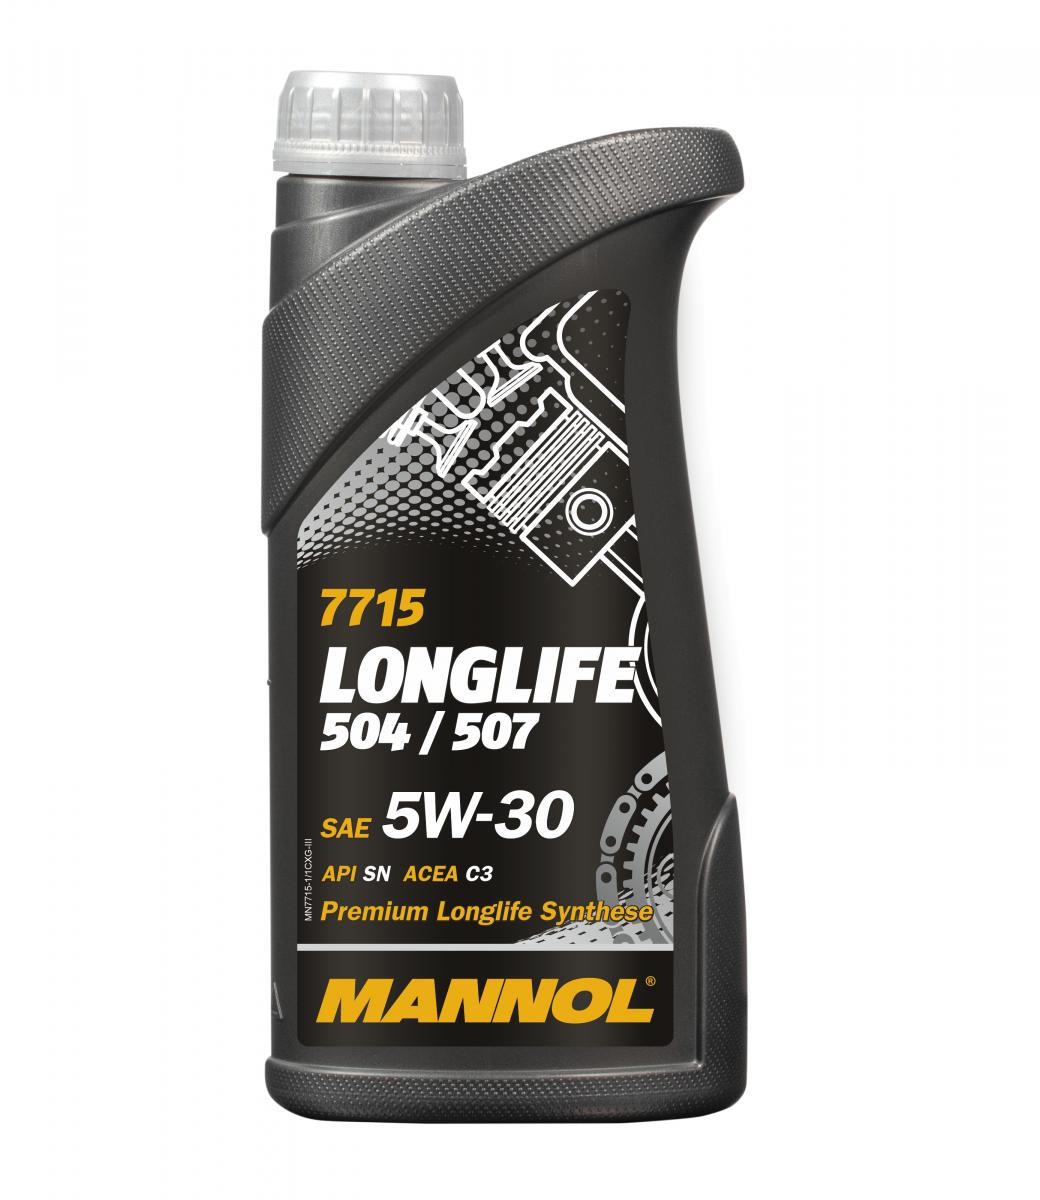 MANNOL LONGLIFE, 504/507 MN7715-1 Engine oil 5W-30, 1l